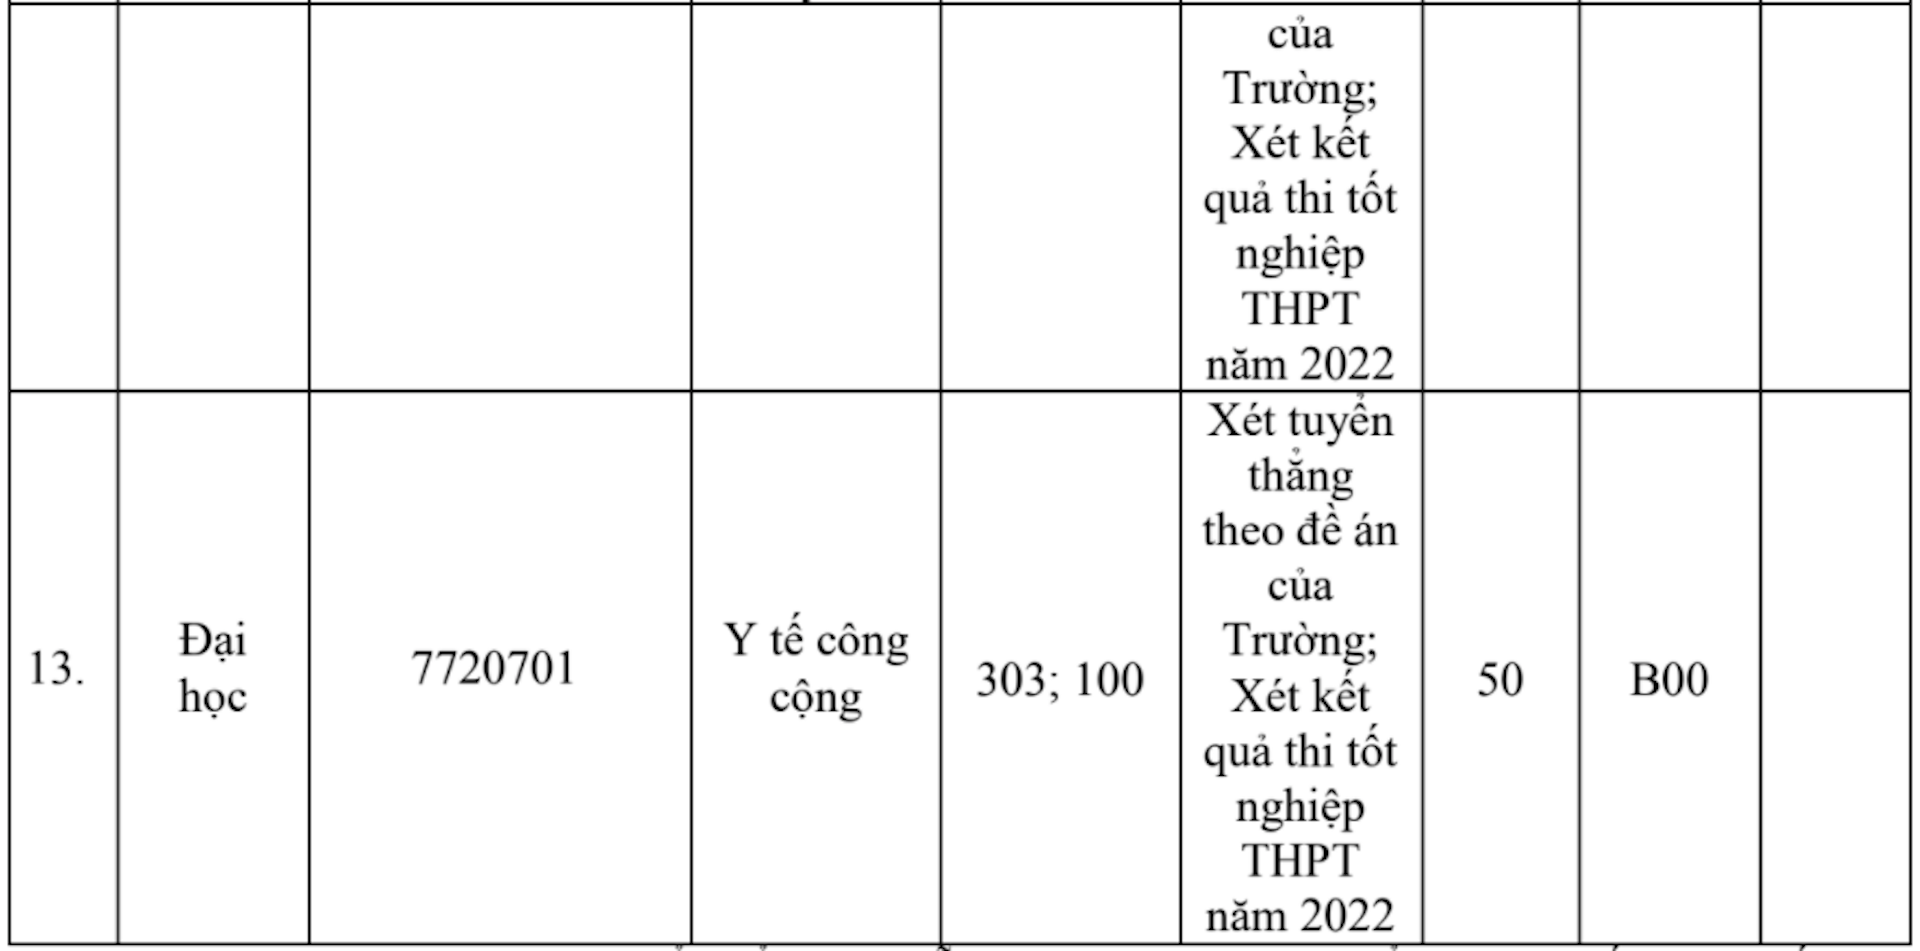 Đại học Y Hà Nội tăng chỉ tiêu, điều chỉnh phương thức tuyển - 5